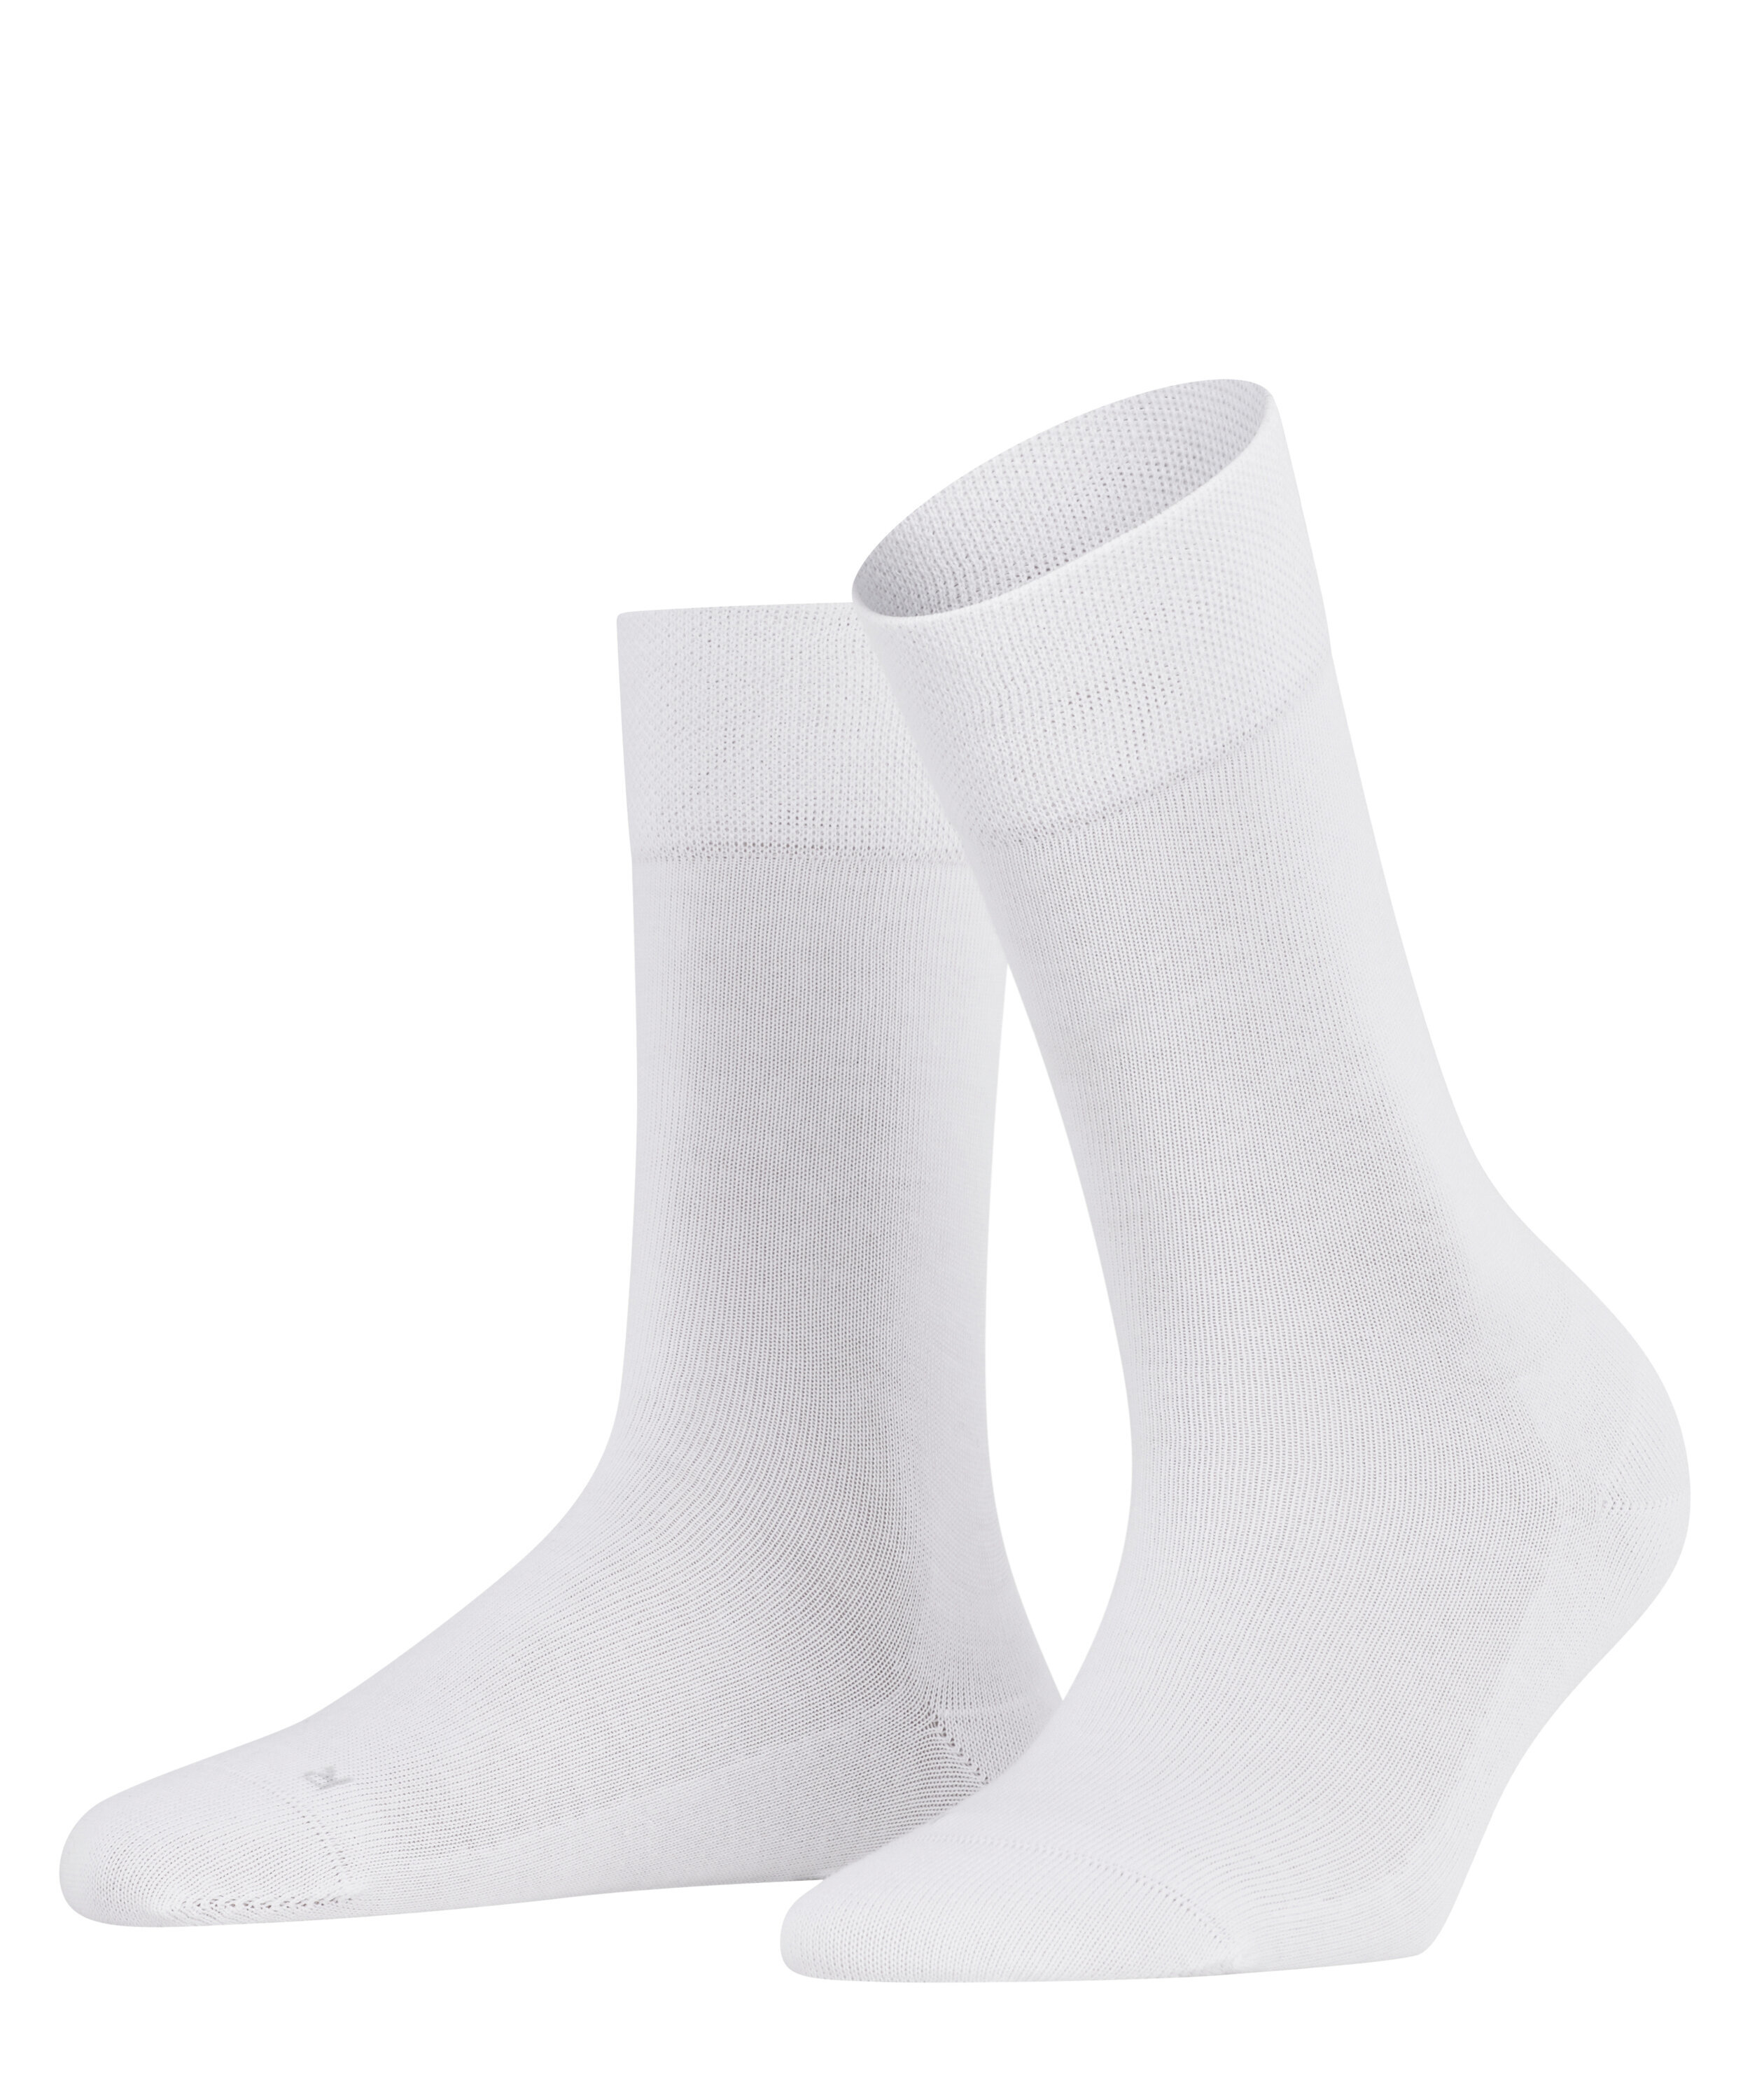 Damen-Socken "Sensitive London" mit druckfreiem Bündchen aus elastischer Baumwolle